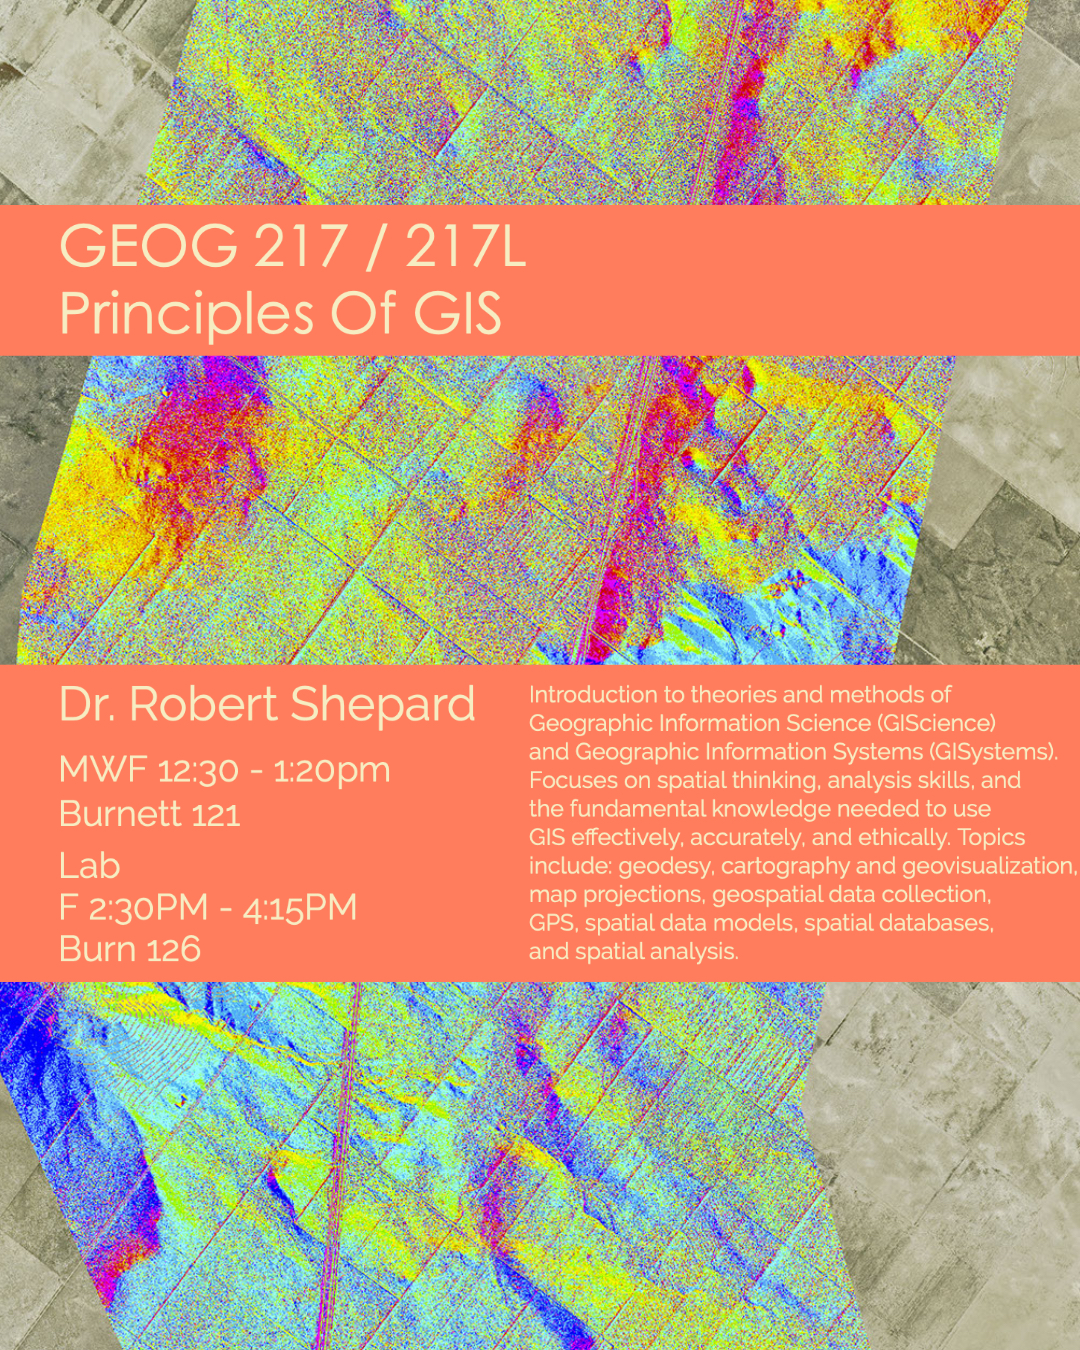 GEOG 217: Principles of GIS